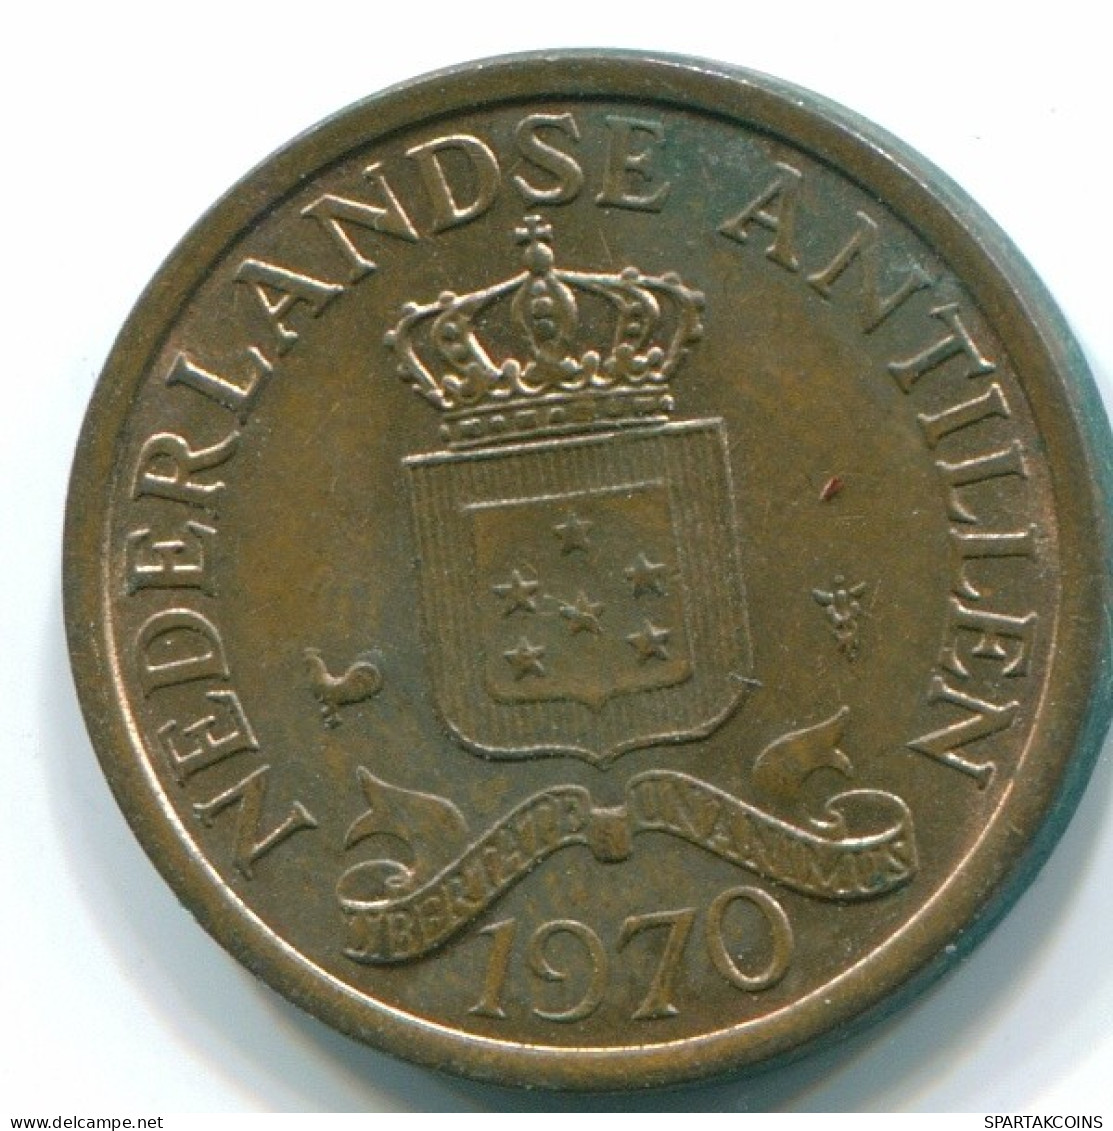 1 CENT 1970 NIEDERLÄNDISCHE ANTILLEN Bronze Koloniale Münze #S10606.D.A - Nederlandse Antillen